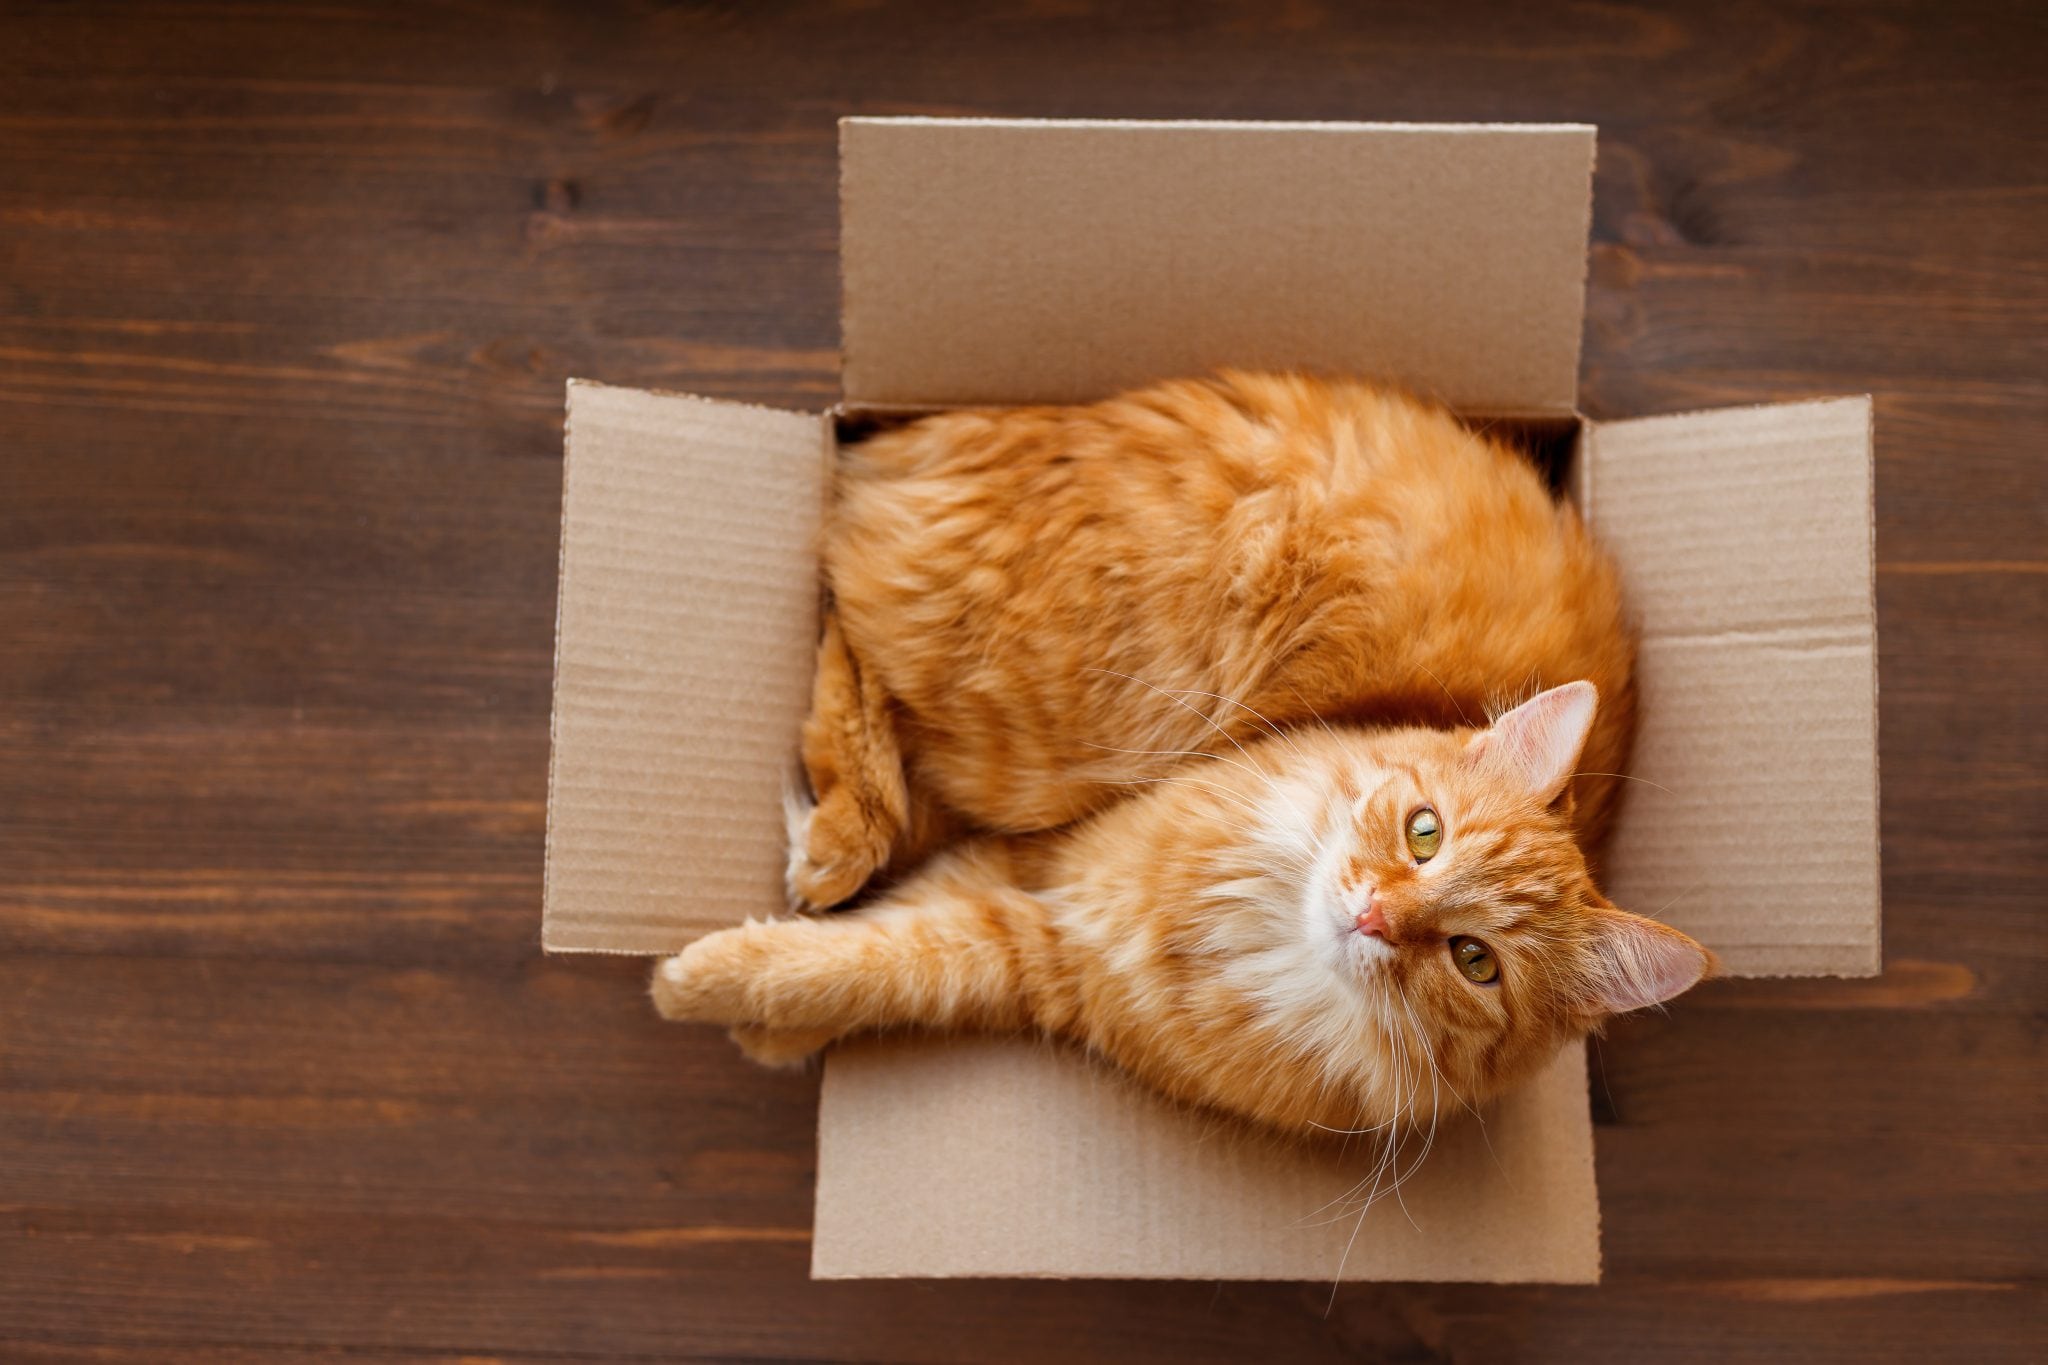 Почему кошки любят сидеть и спать в пакетах и коробках